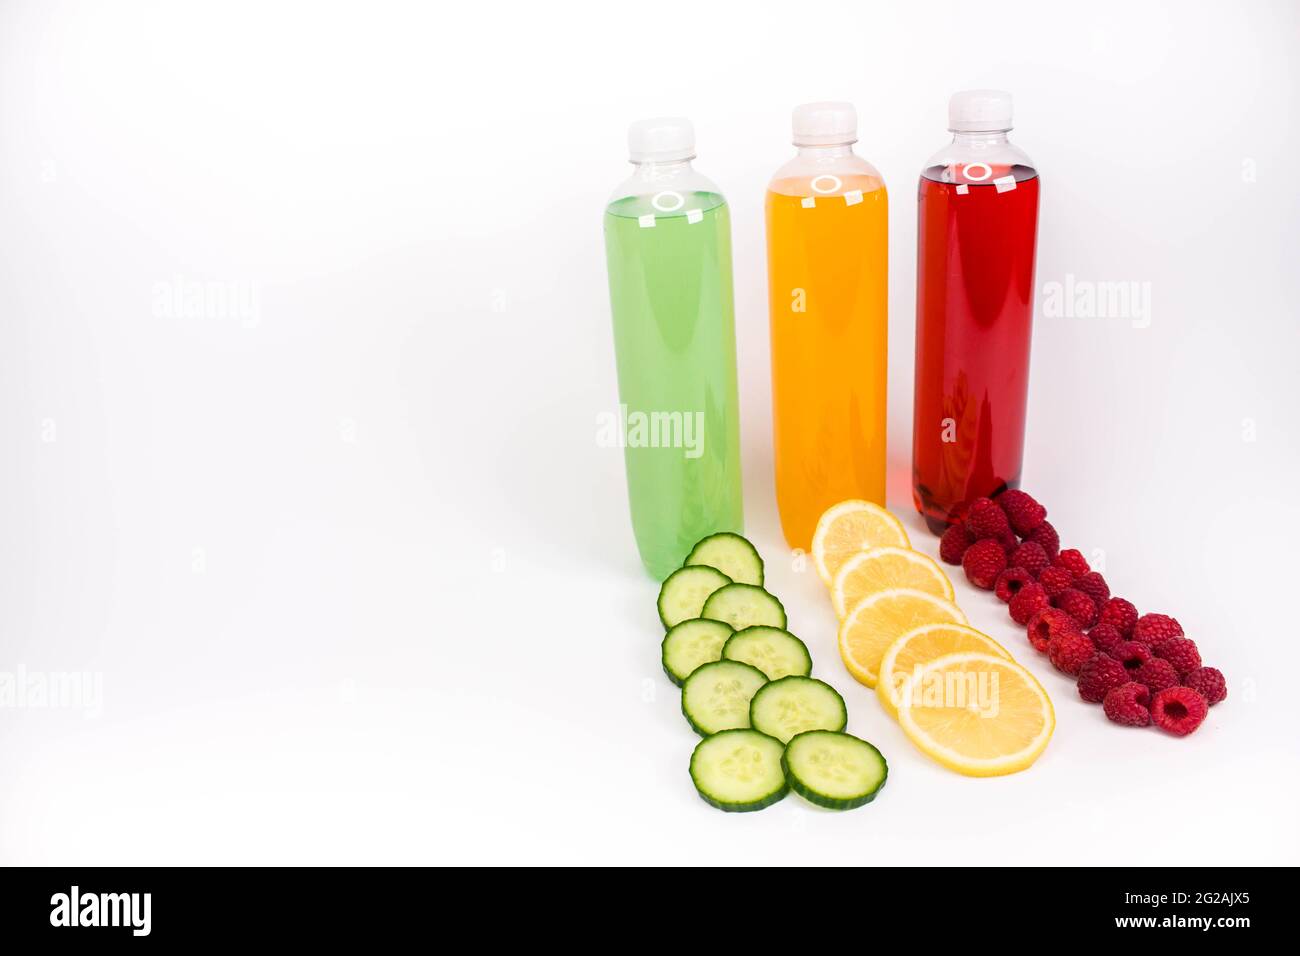 Verschiedene Smoothies oder Säfte in Flaschen und Zutaten auf weißer, gesunder Ernährung rohe Detox veganes Clean Food-Konzept Stockfoto